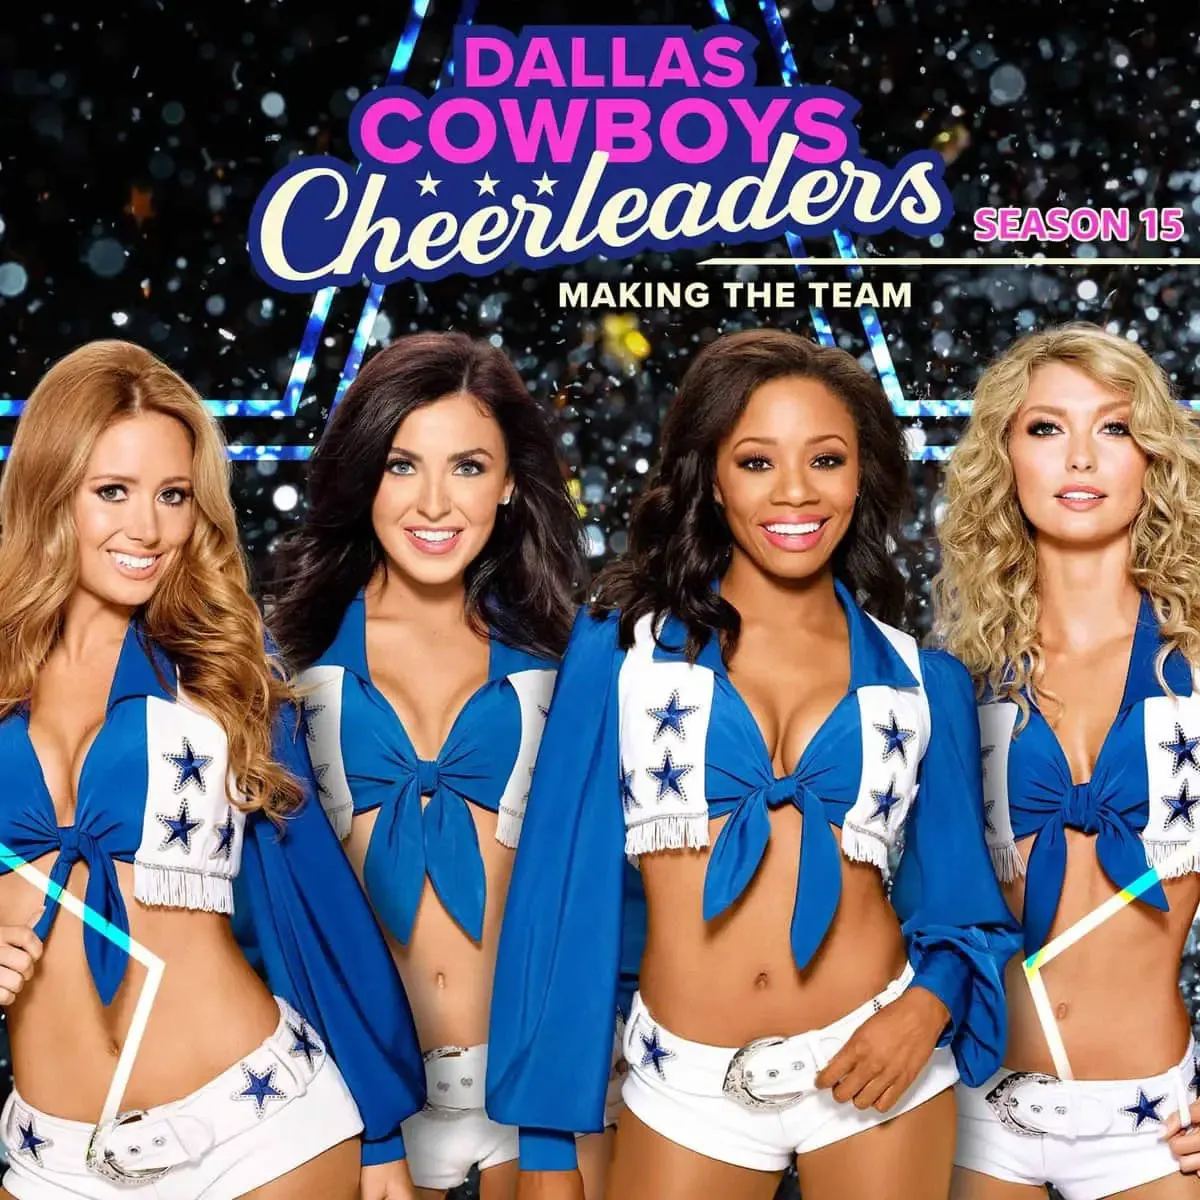 Dallas Cowboy Cheerleader Costume